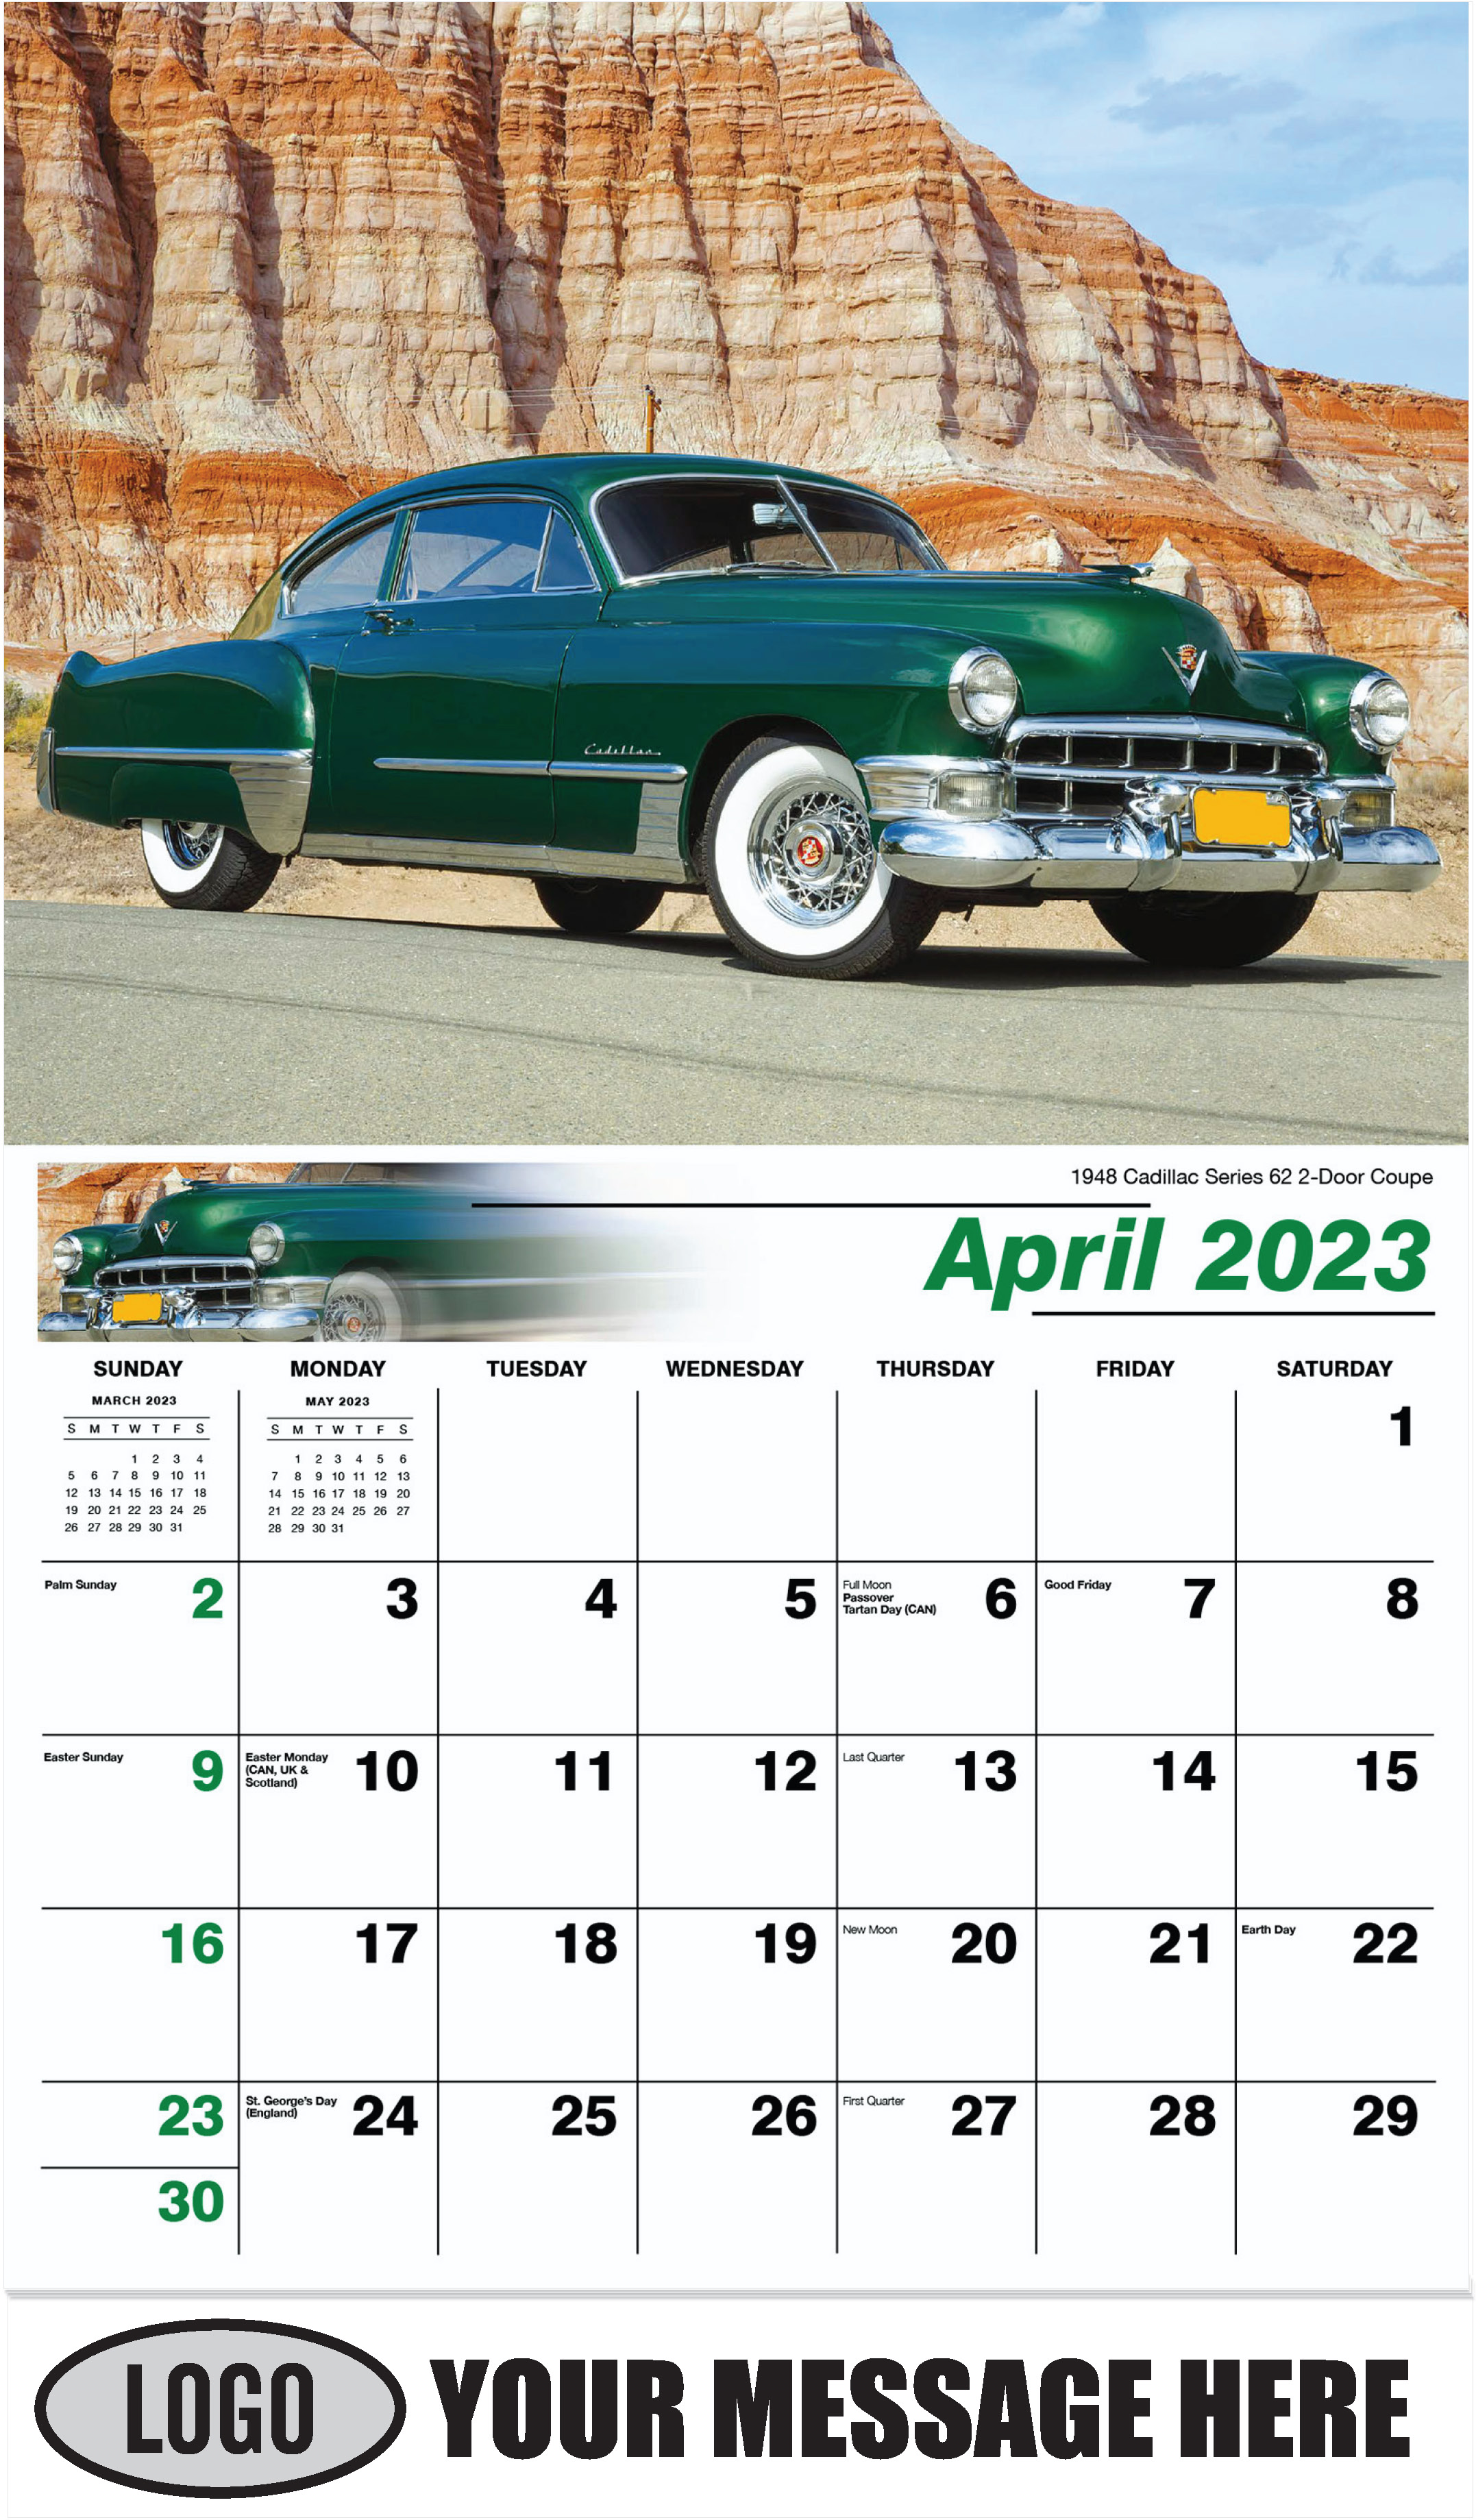 1948 Cadillac Series 62 2-Door Coupe - April - Classic Cars 2023 Promotional Calendar